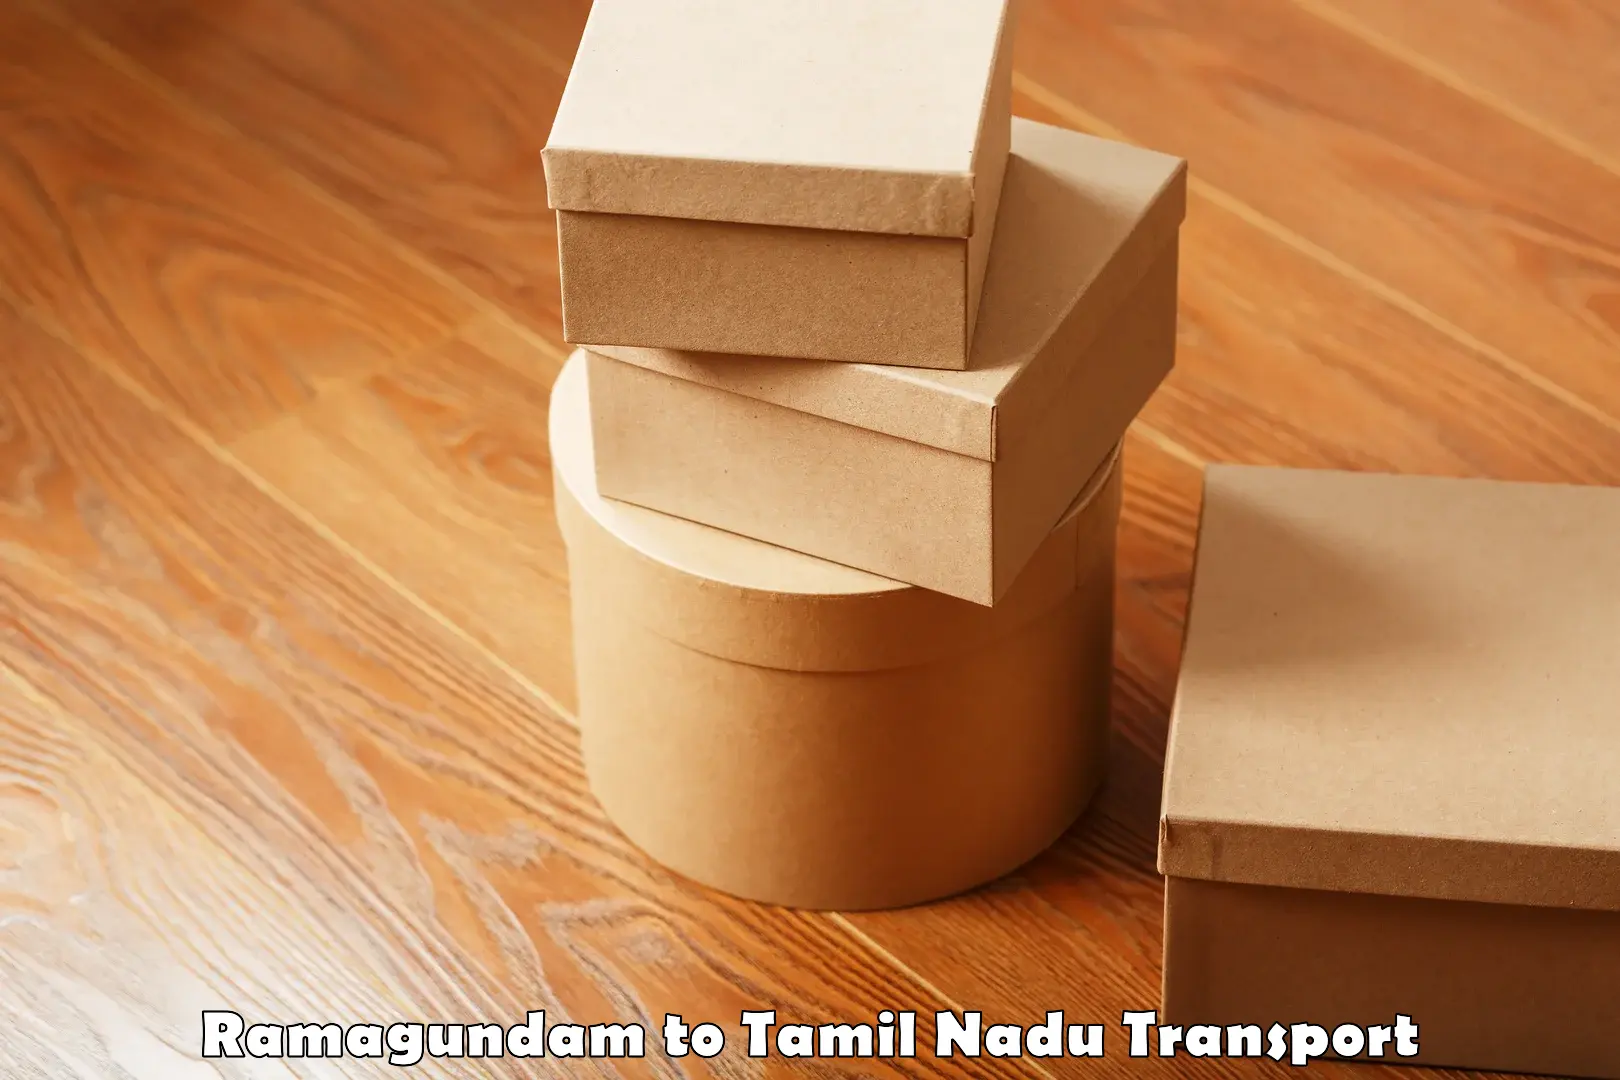 All India transport service Ramagundam to Tiruturaipundi